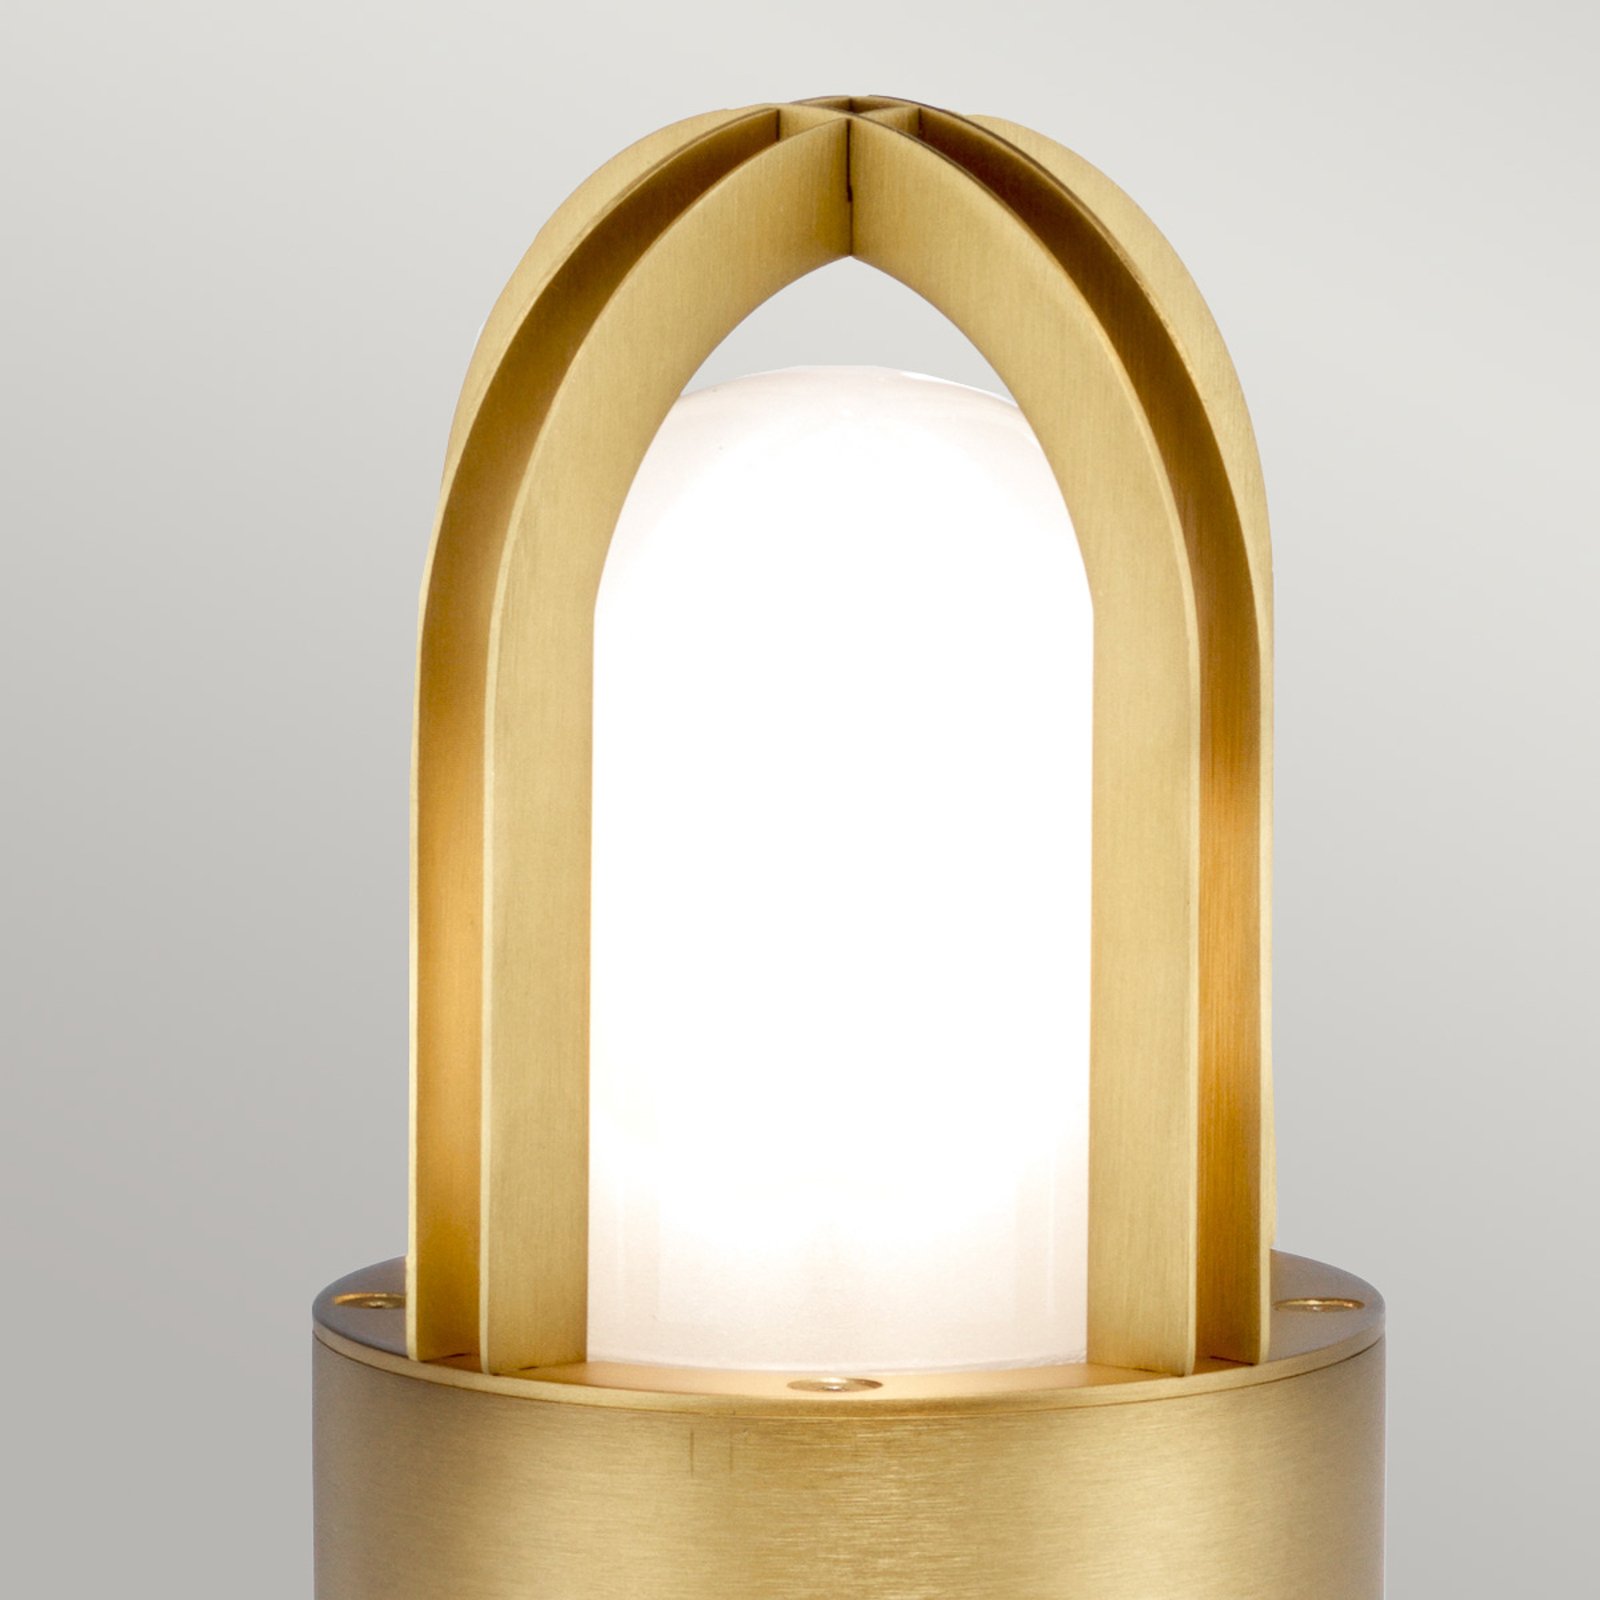 Paignton pillar light, stainless steel, brass